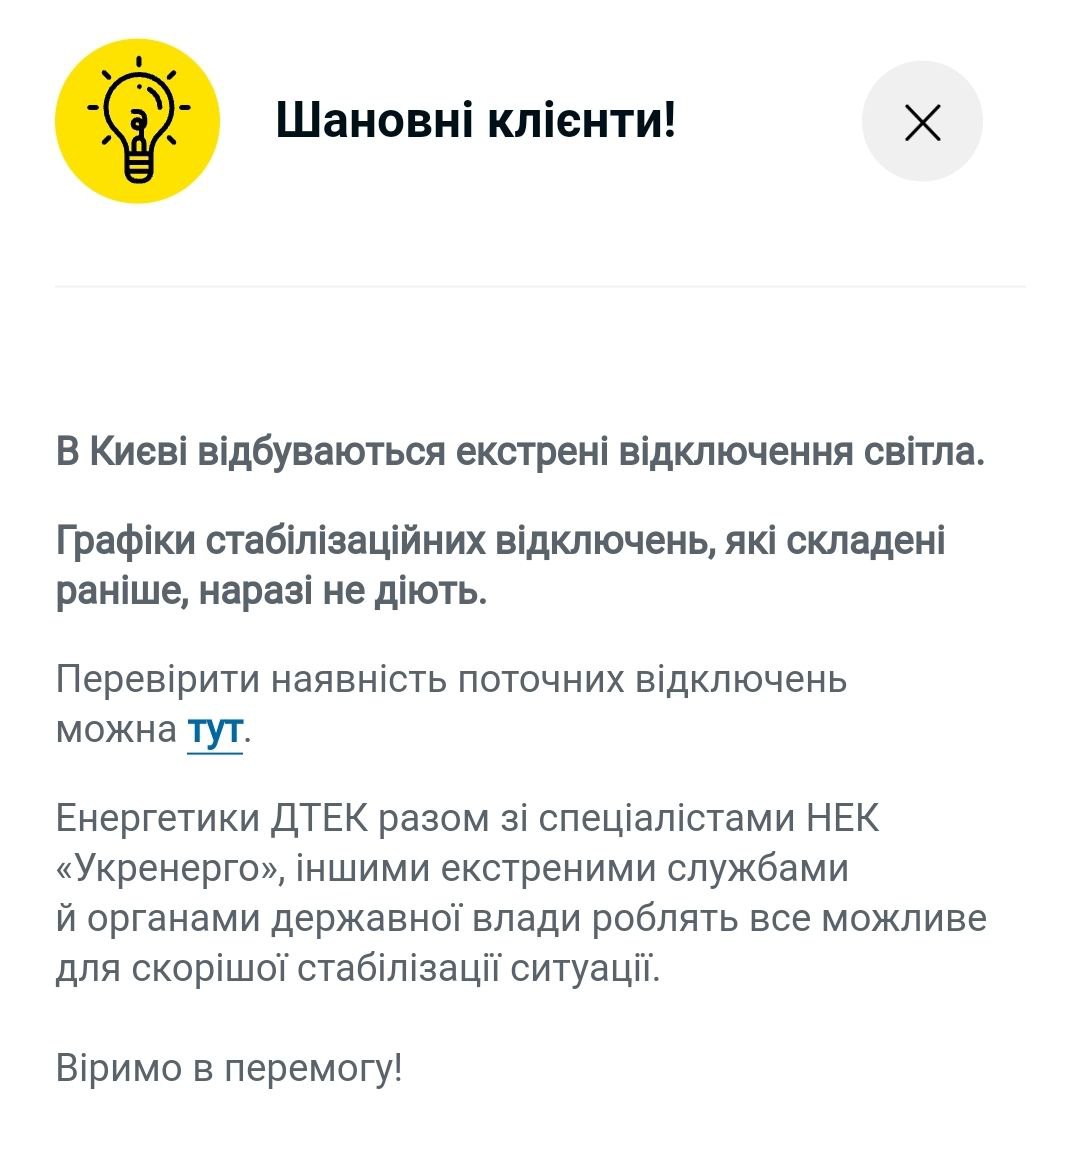 Отключения света в Киеве 26 декабря  - в столице свет отключают не по графику